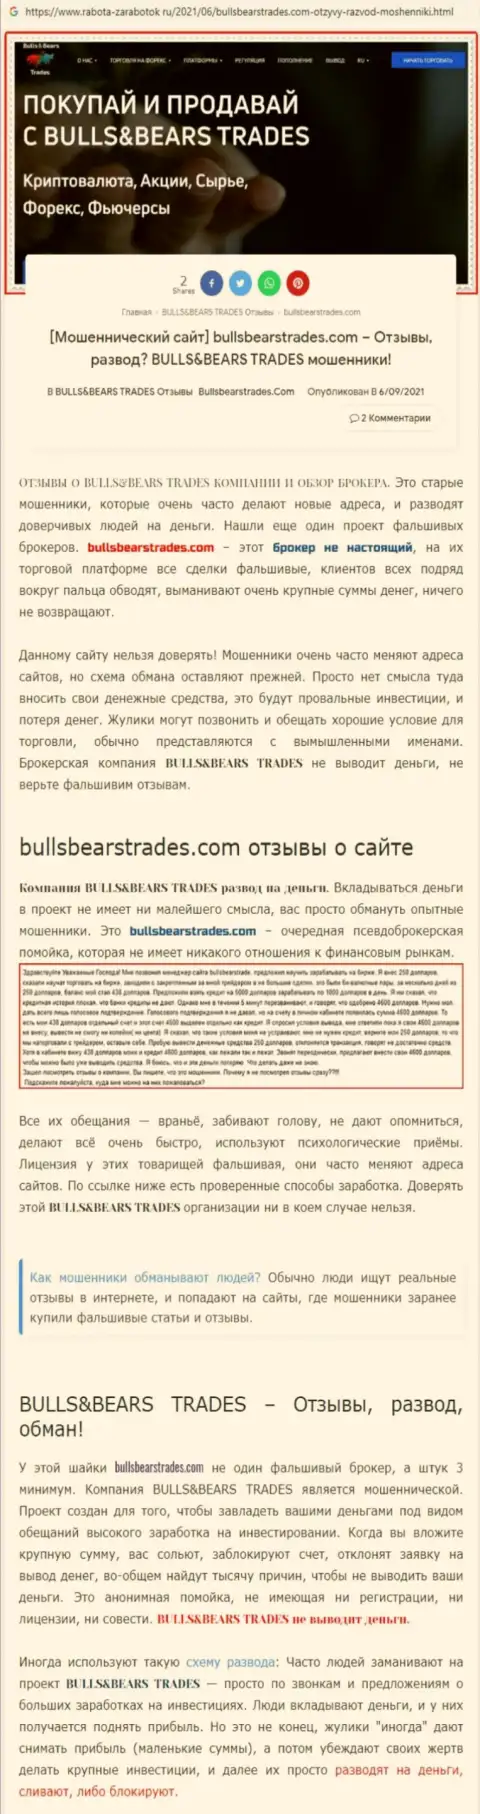 Обзор противозаконно действующей компании BullsBearsTrades о том, как обворовывает до последней копейки клиентов